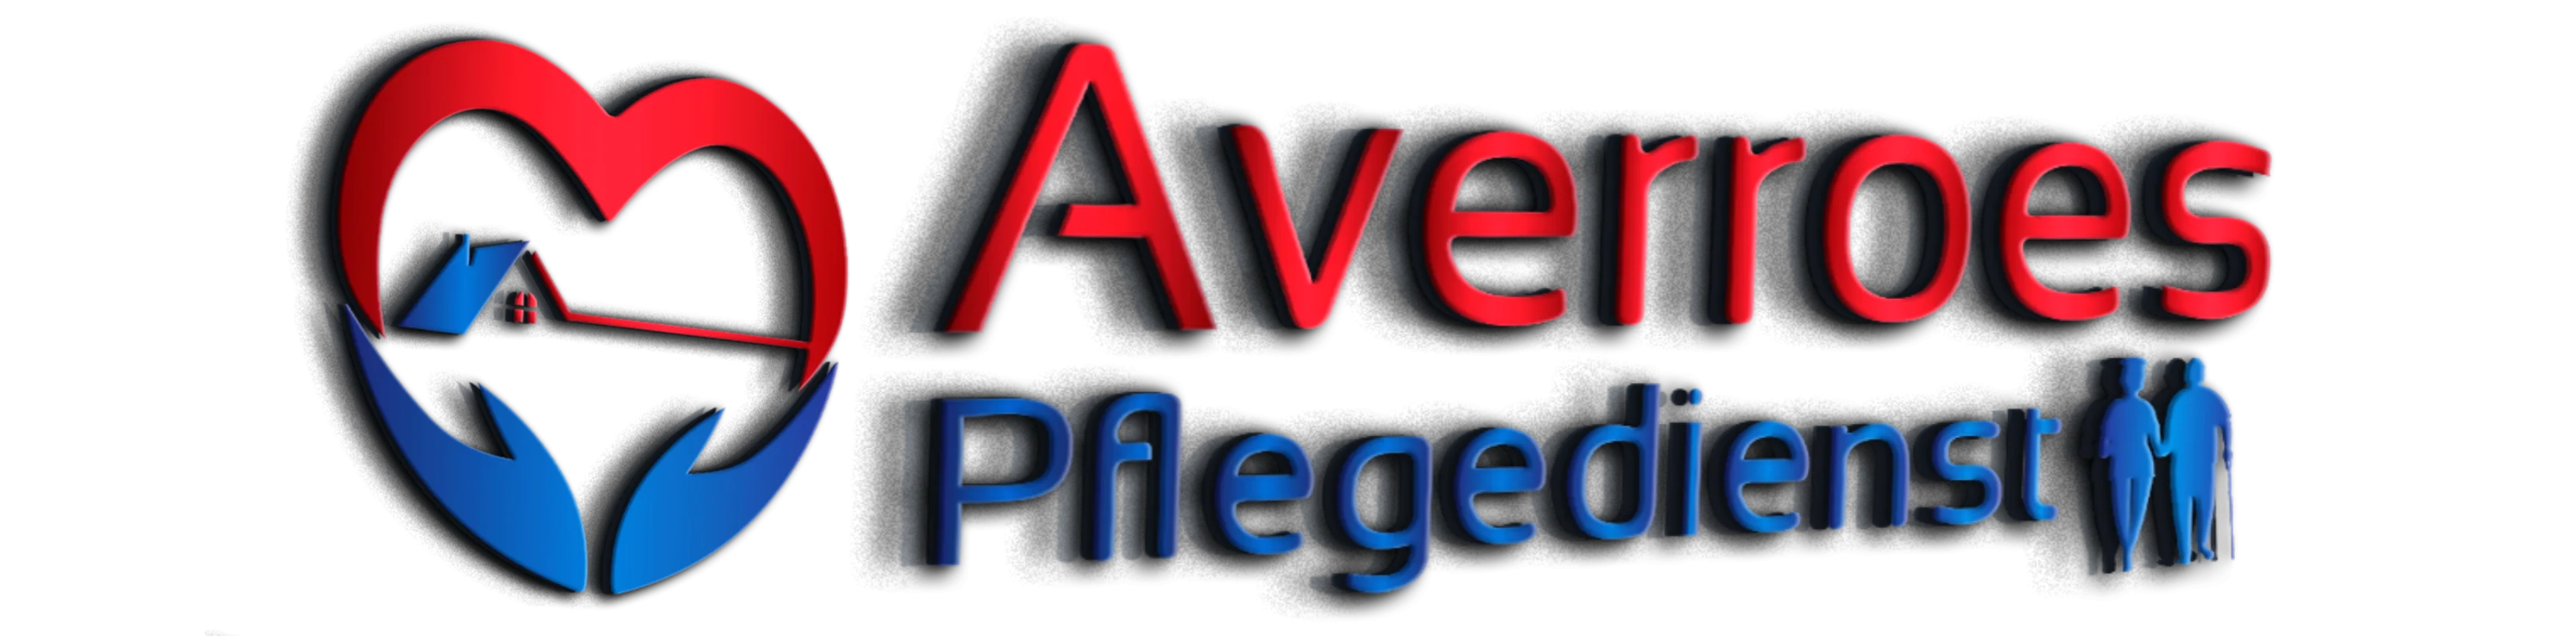 Averroes Pflegedienst Logo